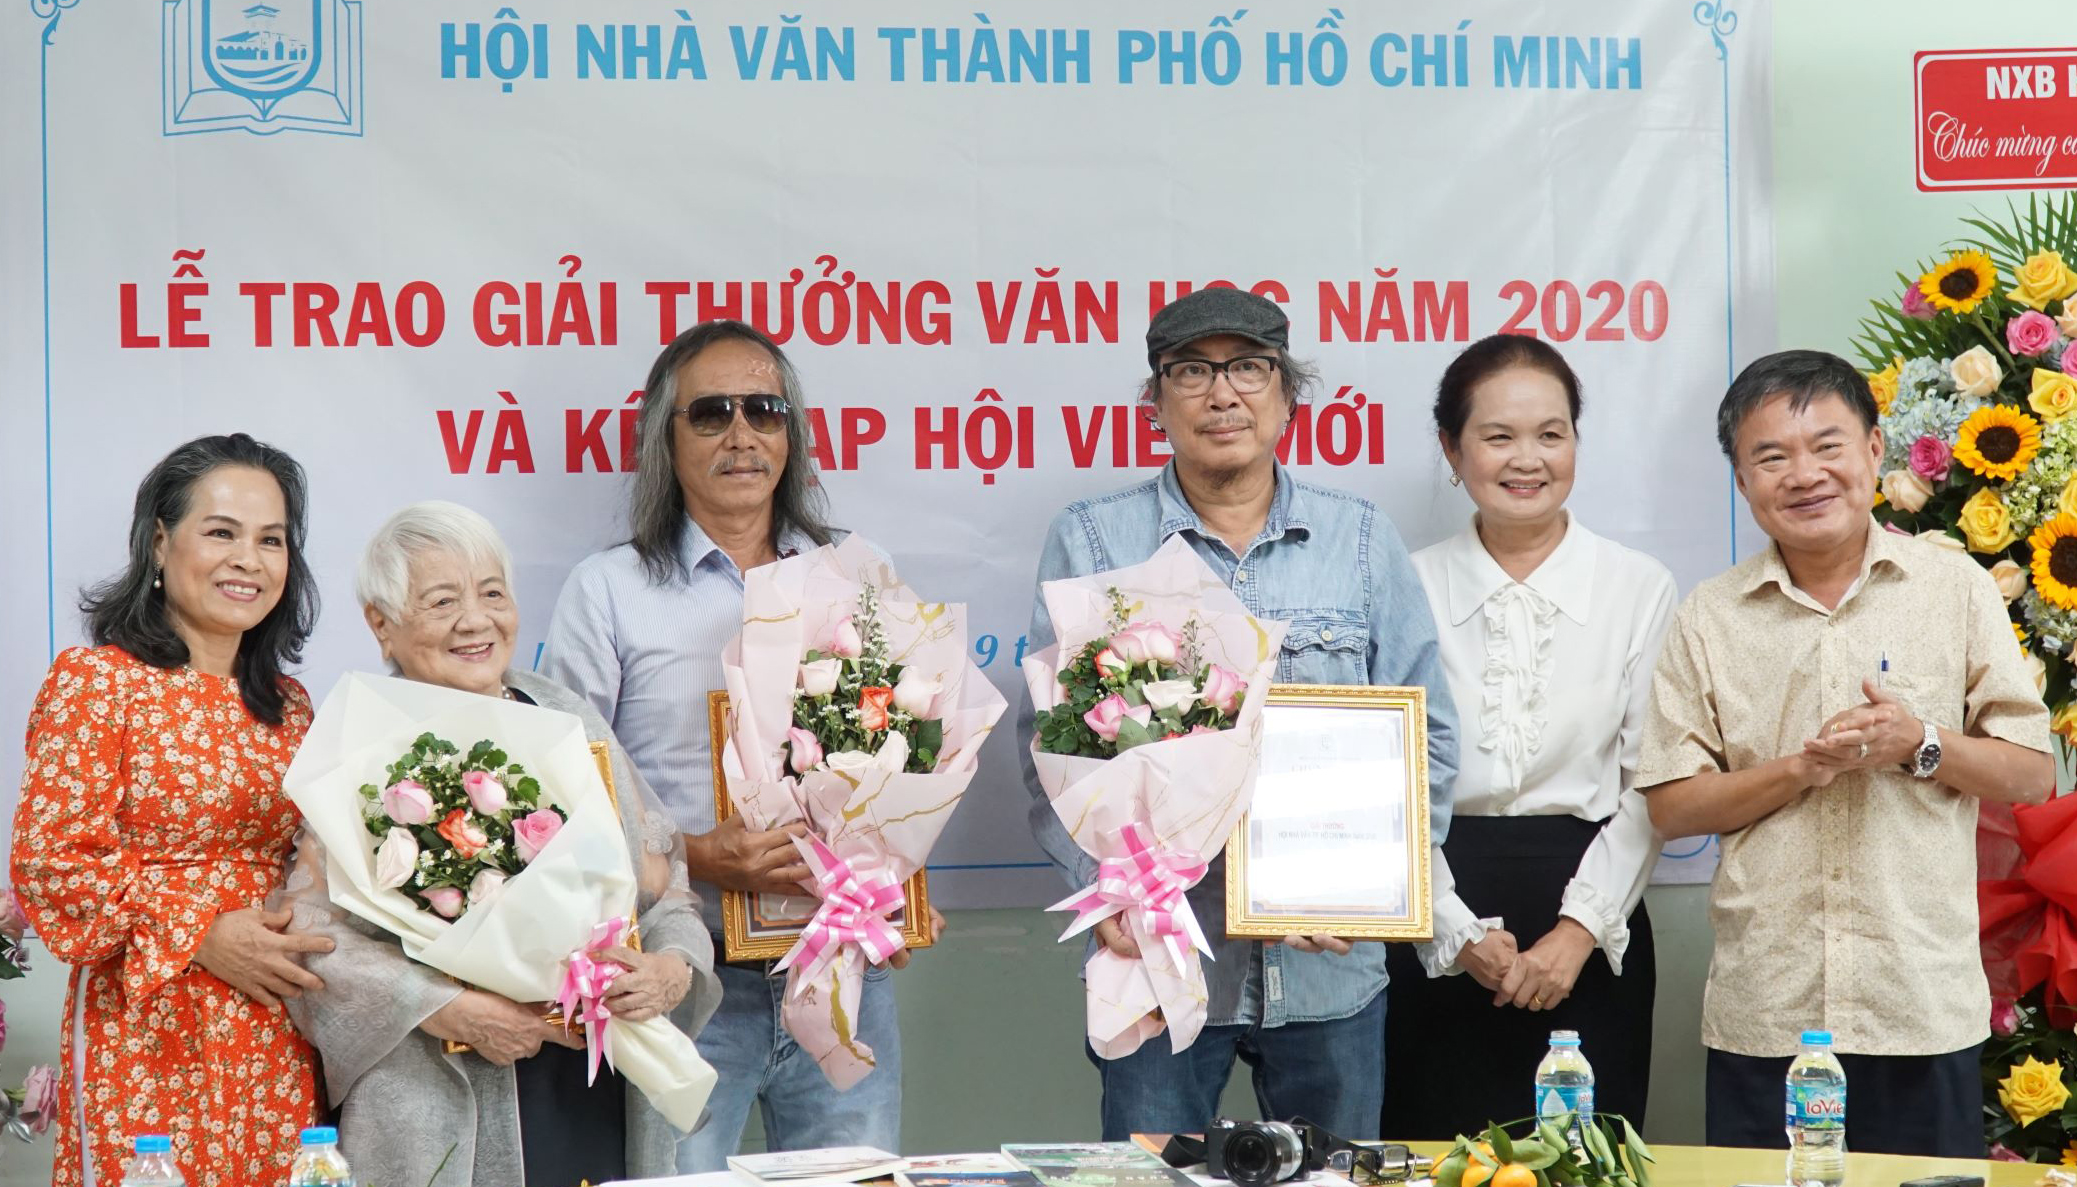 Các tác giả đoạt giải thưởng văn học năm 2020  ( Nhà văn Xuân Phượng, Nhà thơ Cao Xuân Sơn, nhà văn Bùi Quang Lâm) cùng  Ban thường vụ Hội nhà văn Tp.HCM.